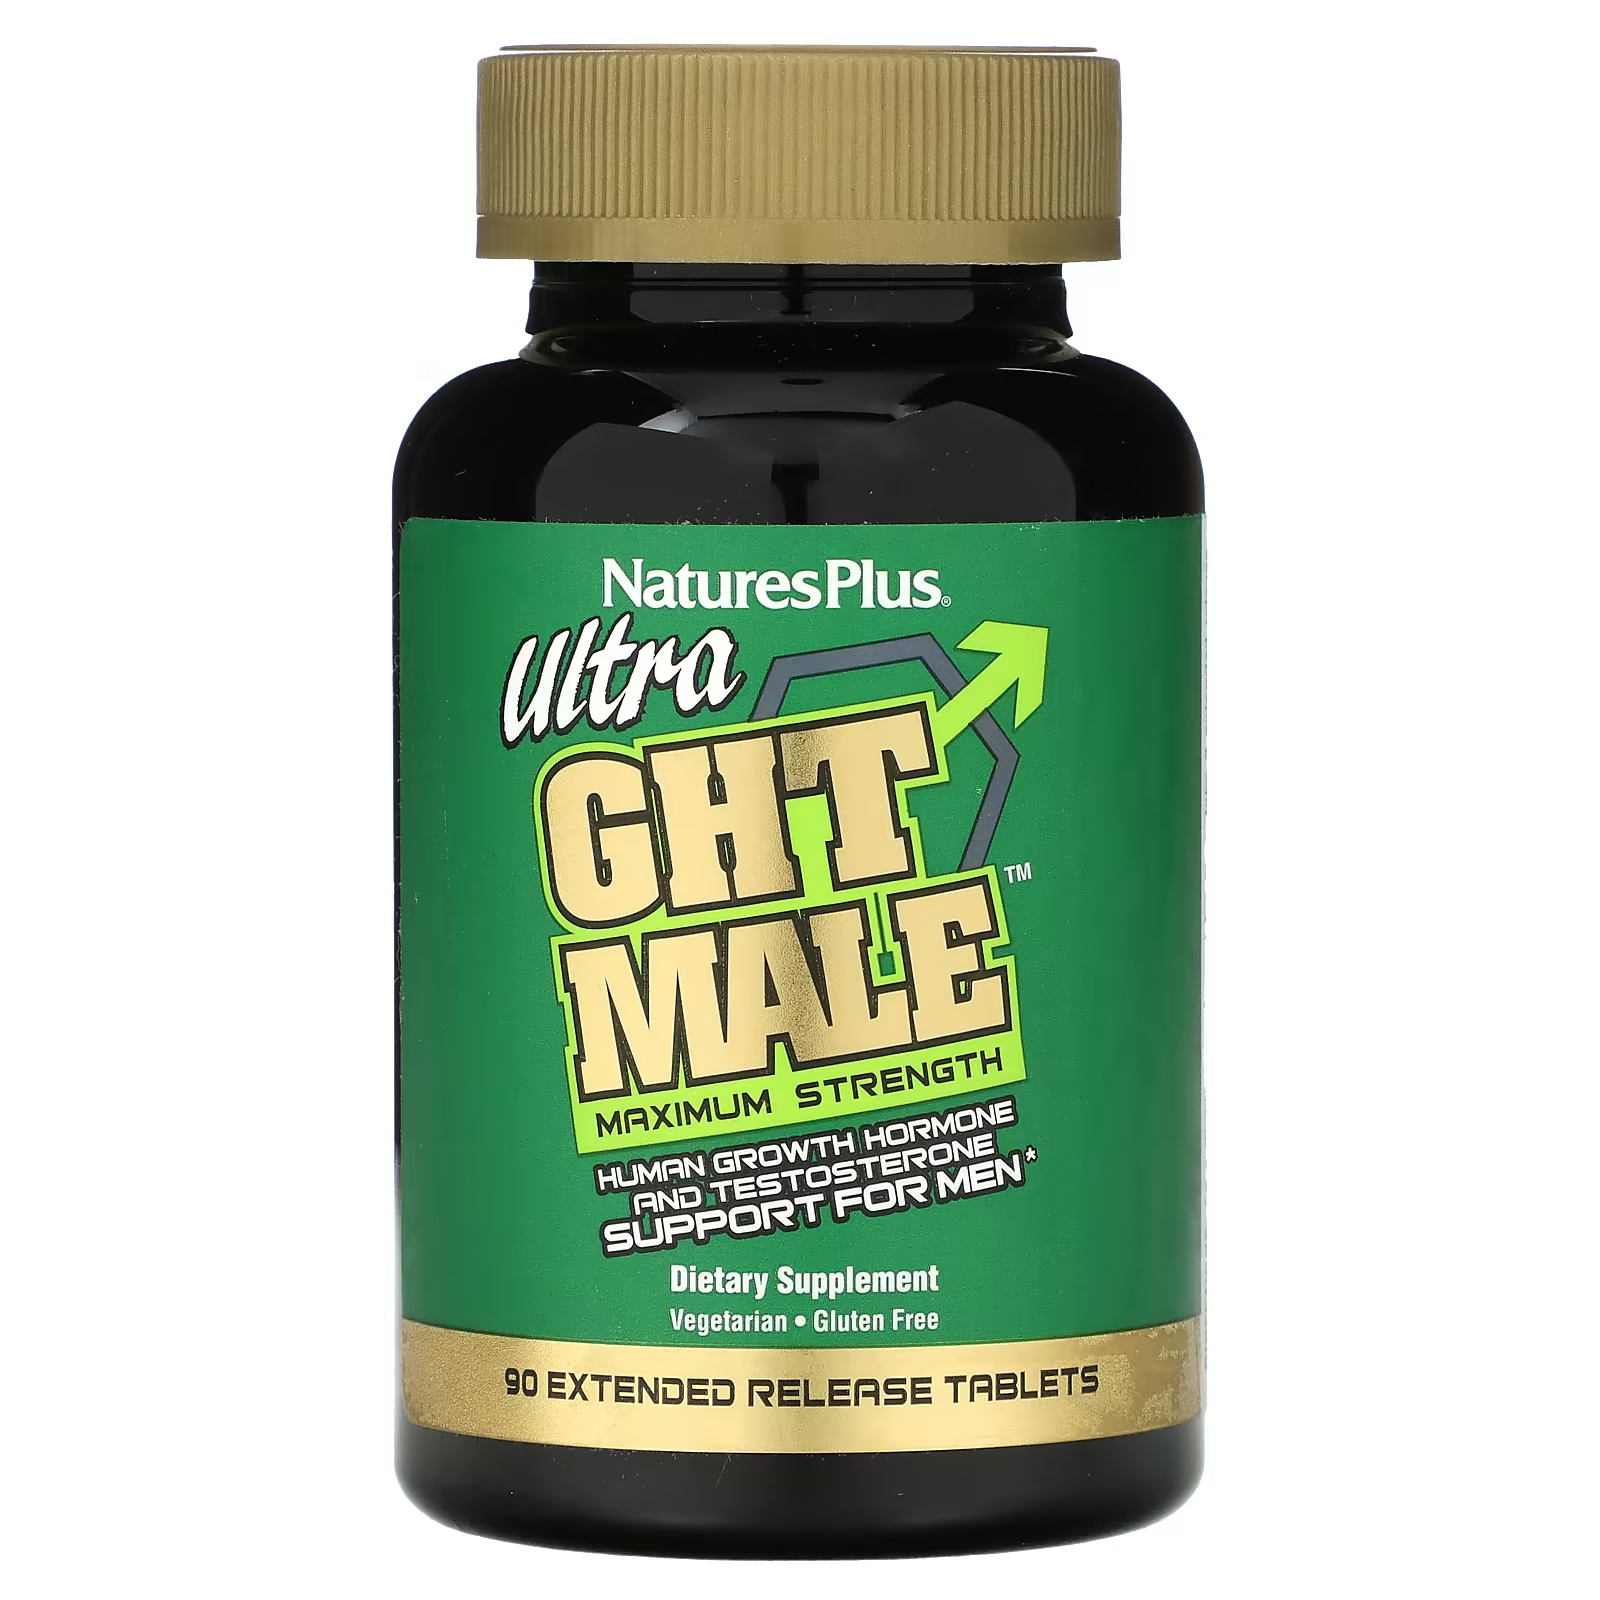 Пищевая добавка NaturesPlus Ultra GHT Male для мужчин, 90 таблеток максимальная сила boost для мужчин ultra ght male 90 таблеток пролонгированного действия naturesplus